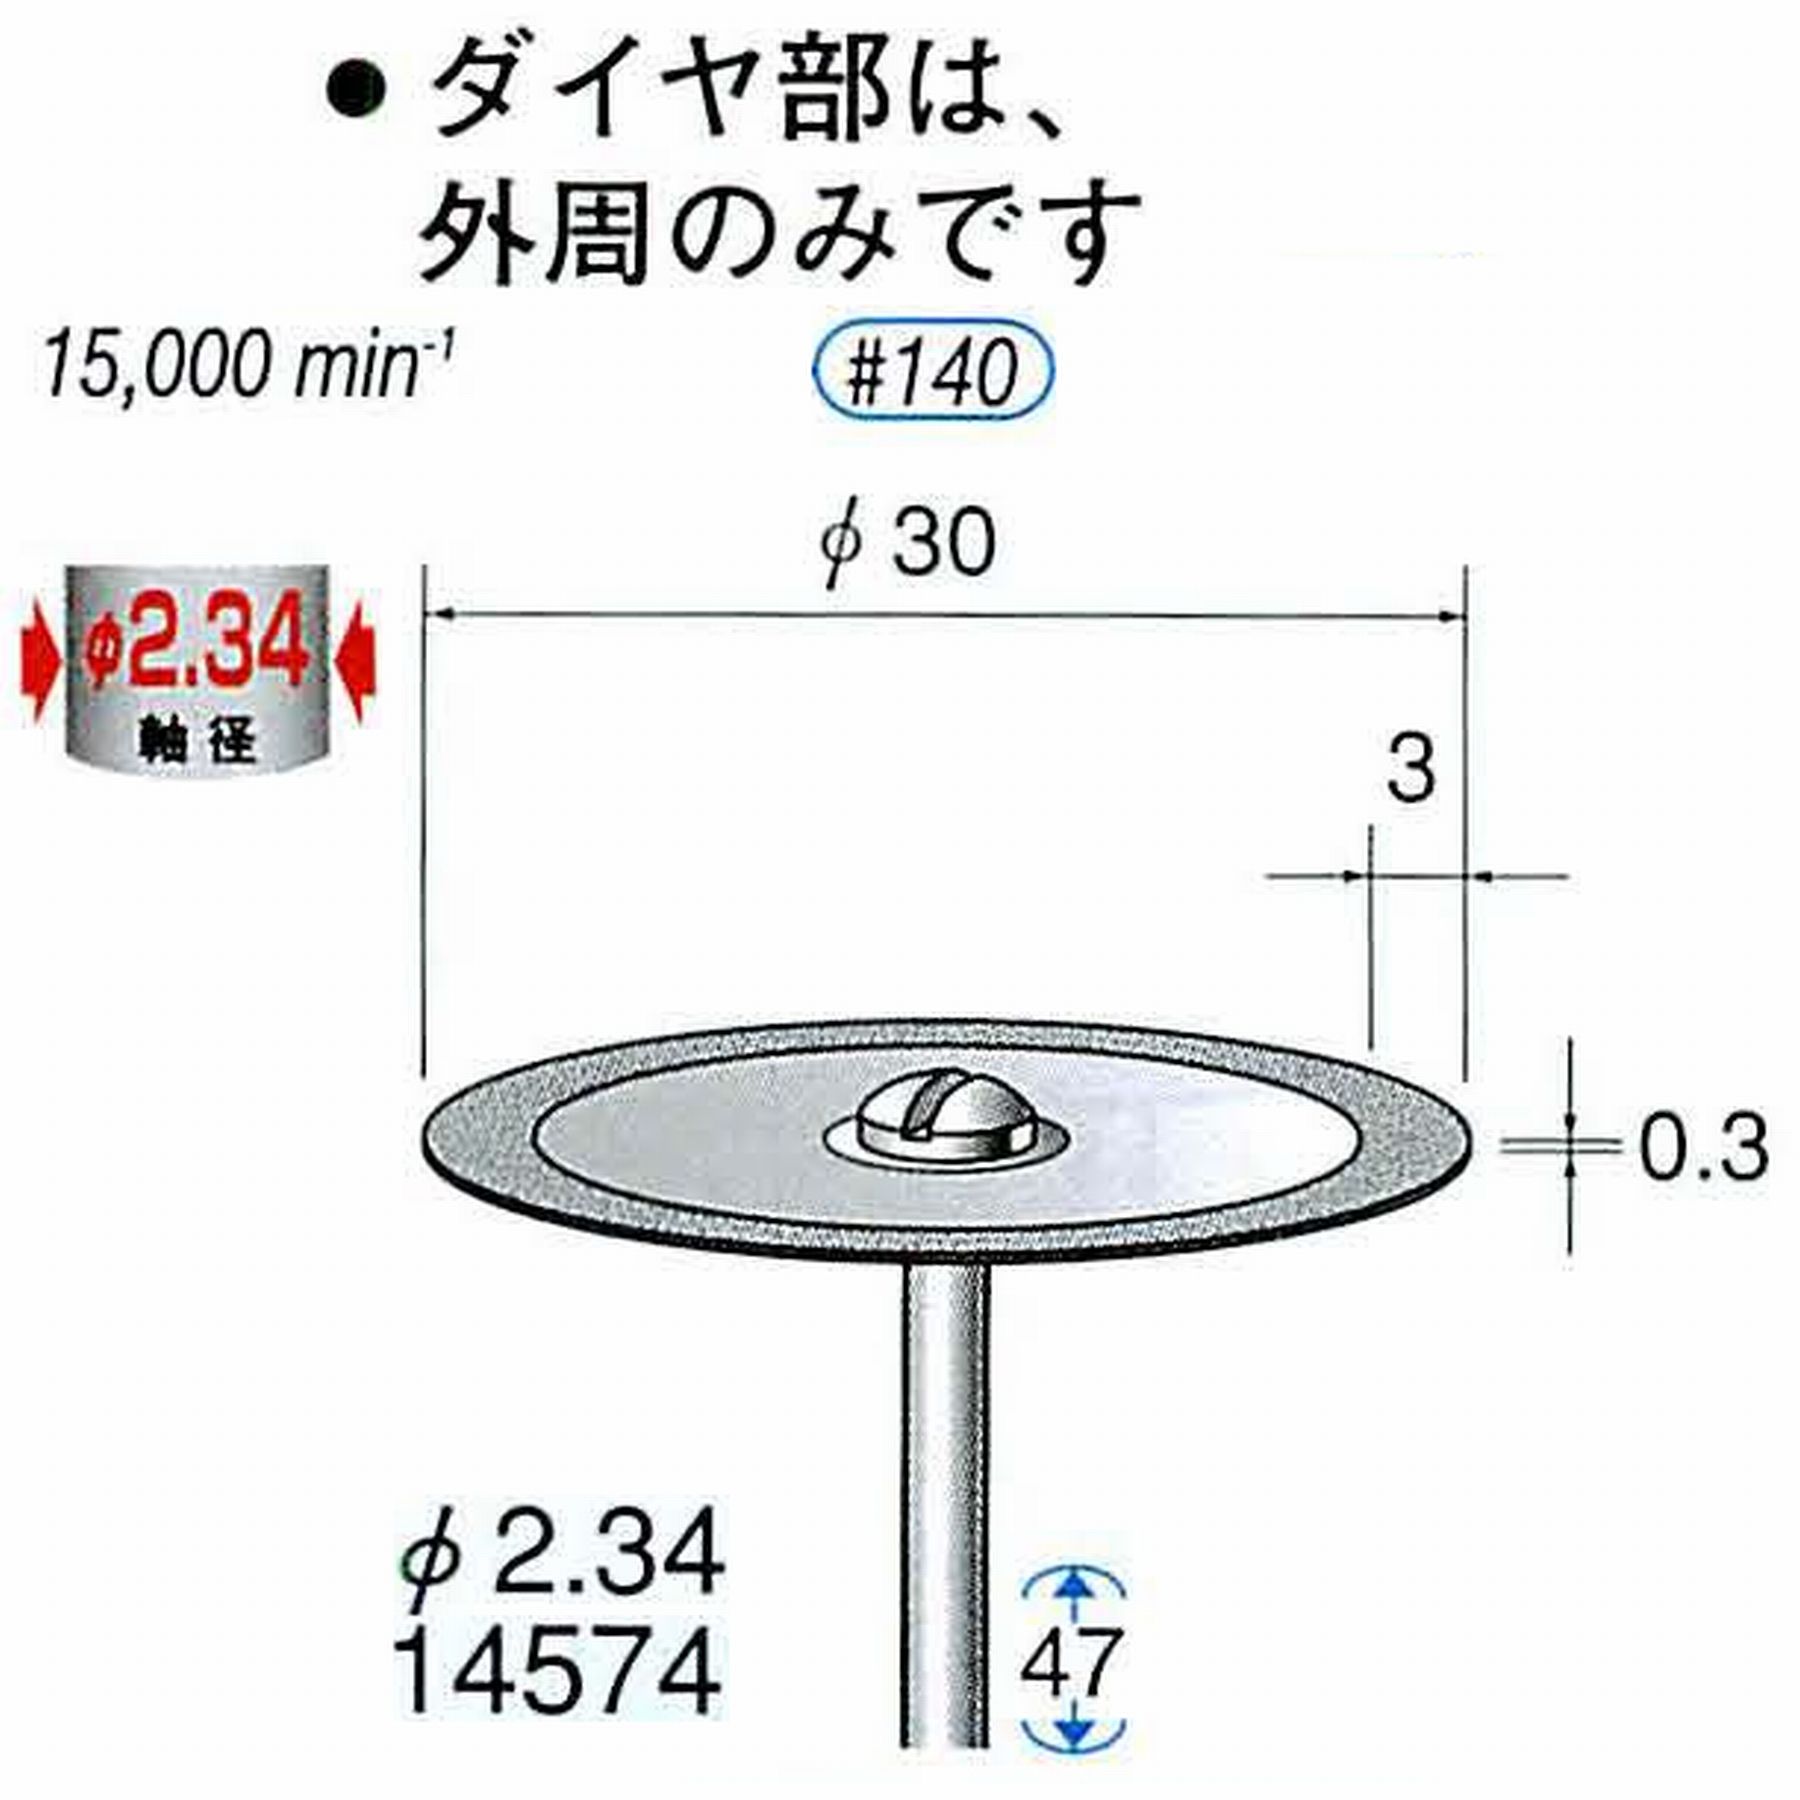 ナカニシ/NAKANISHI ダイヤモンドカッティングディスク メタルボンドタイプ 軸径(シャンク)φ2.34mm 14574